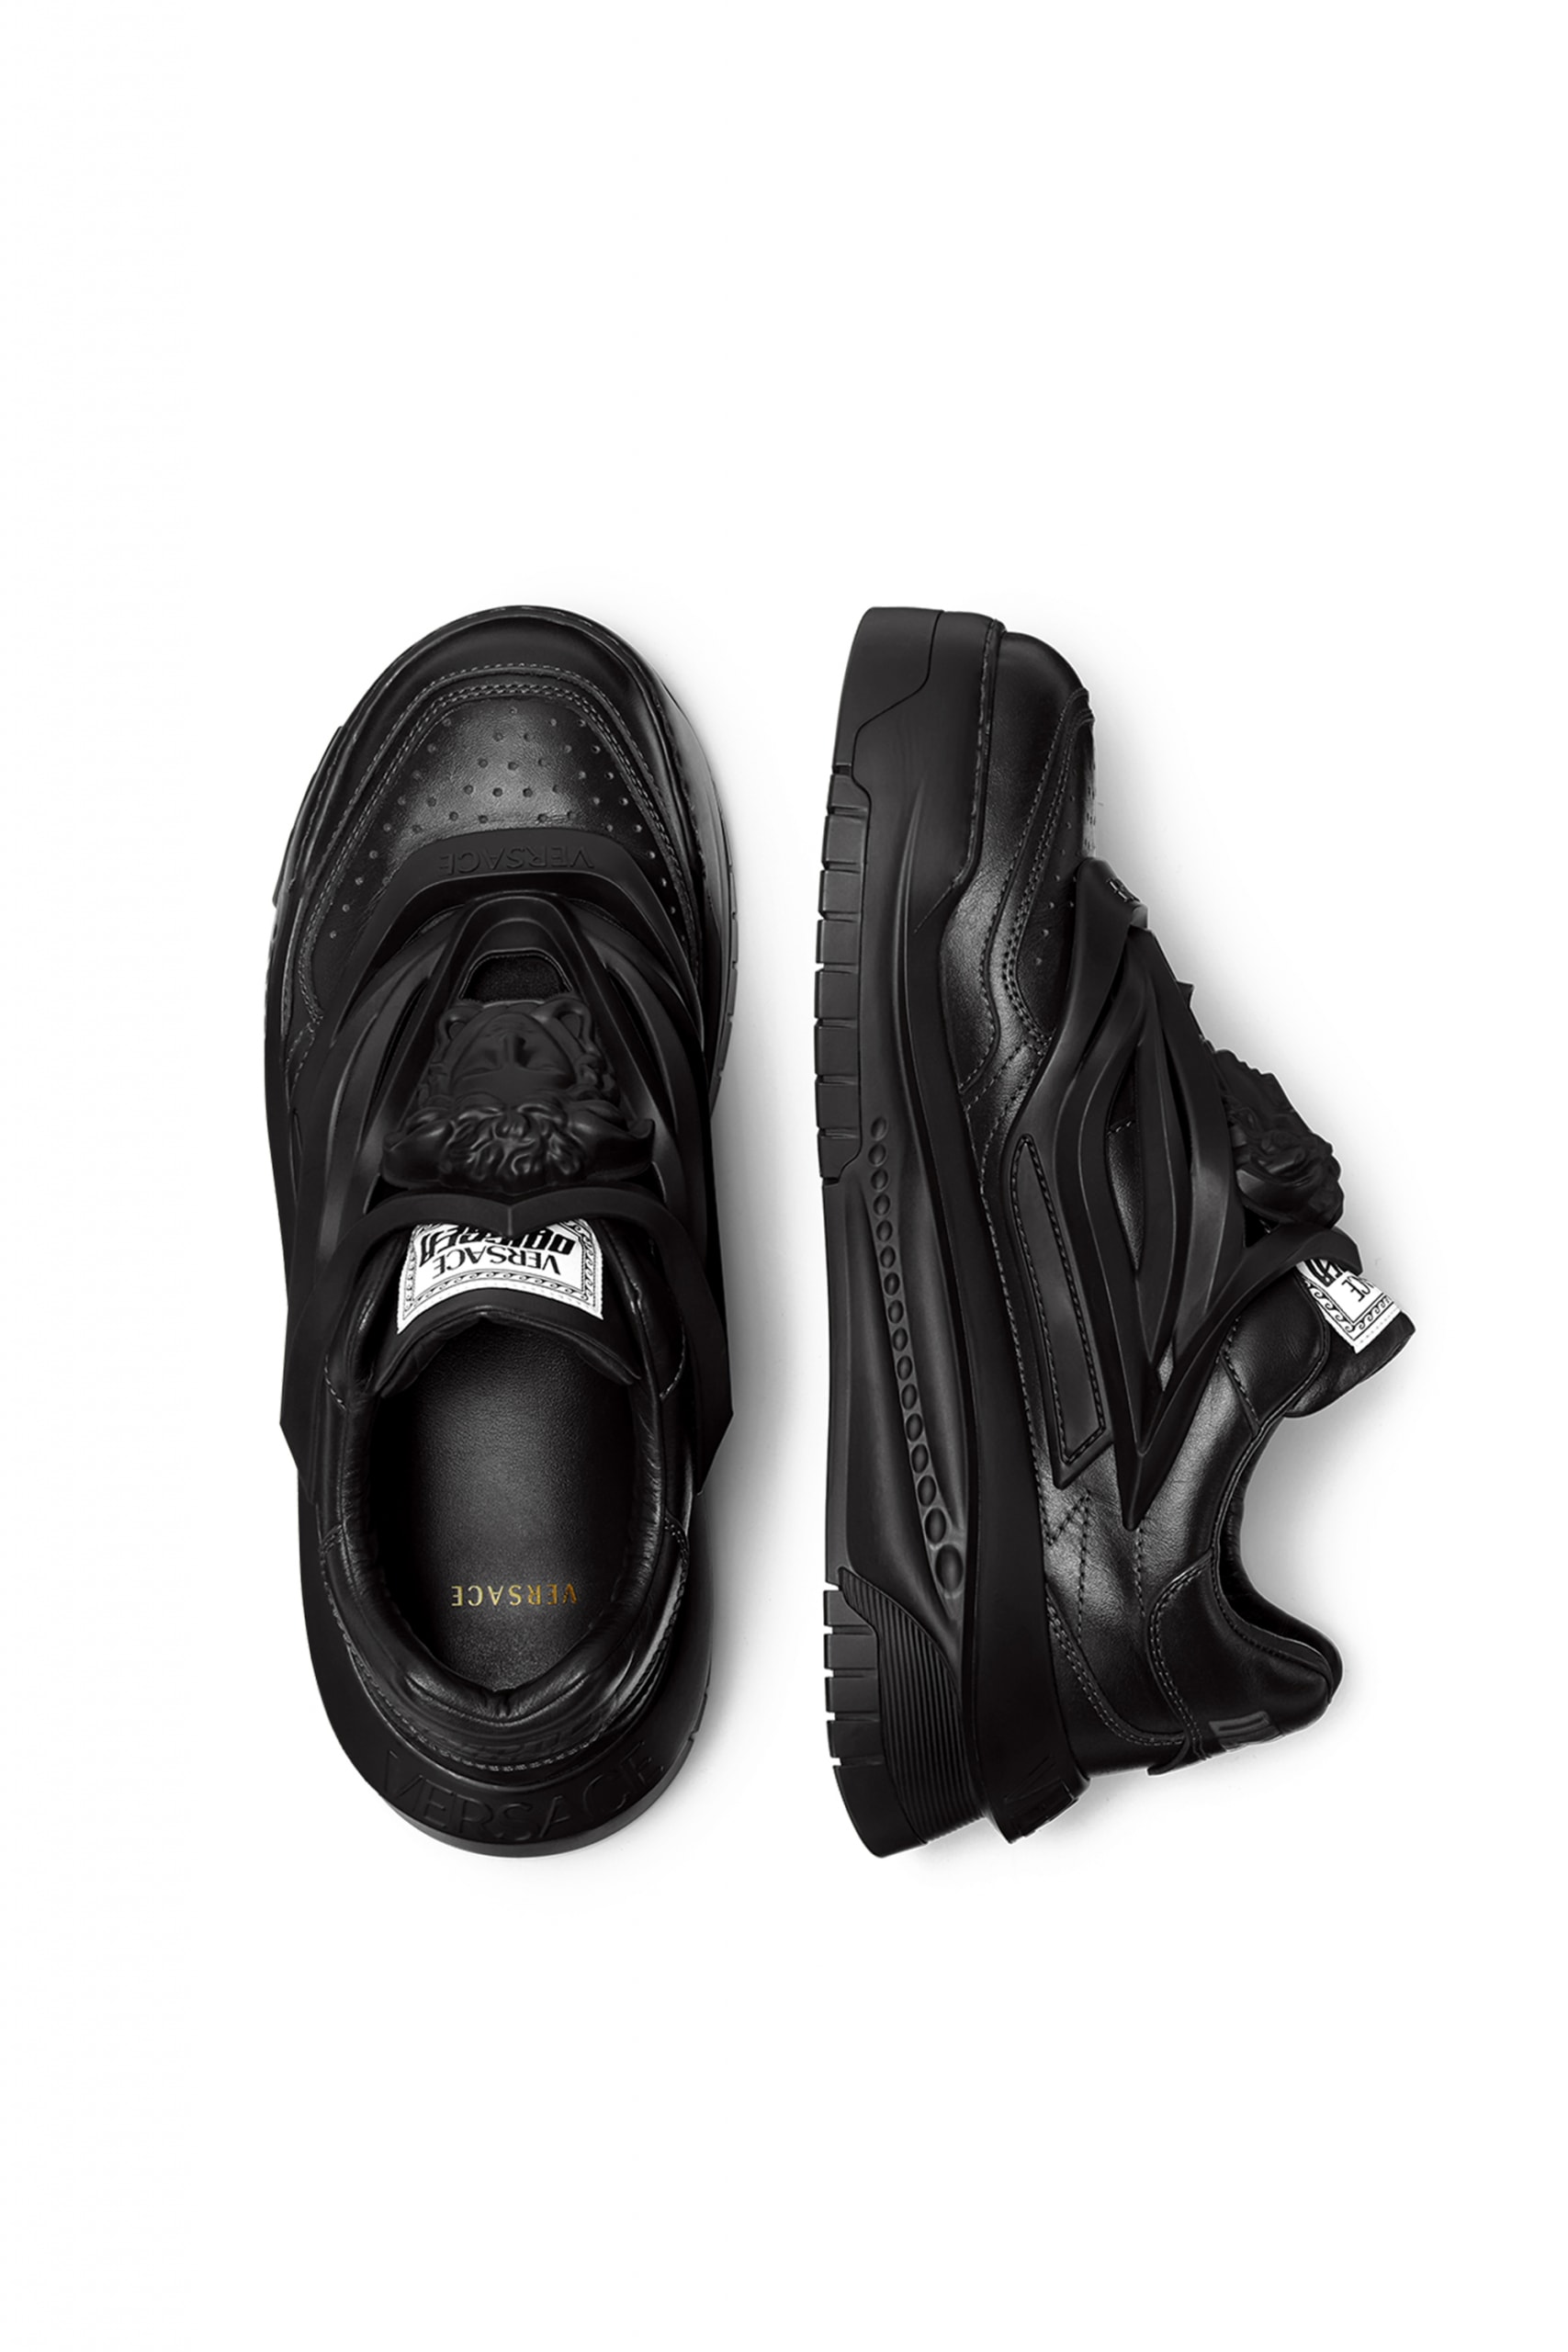 ヴェルサーチェが宇宙を彷彿とさせる新作スニーカー オディッセアをリリース versace odissea sneaker release info